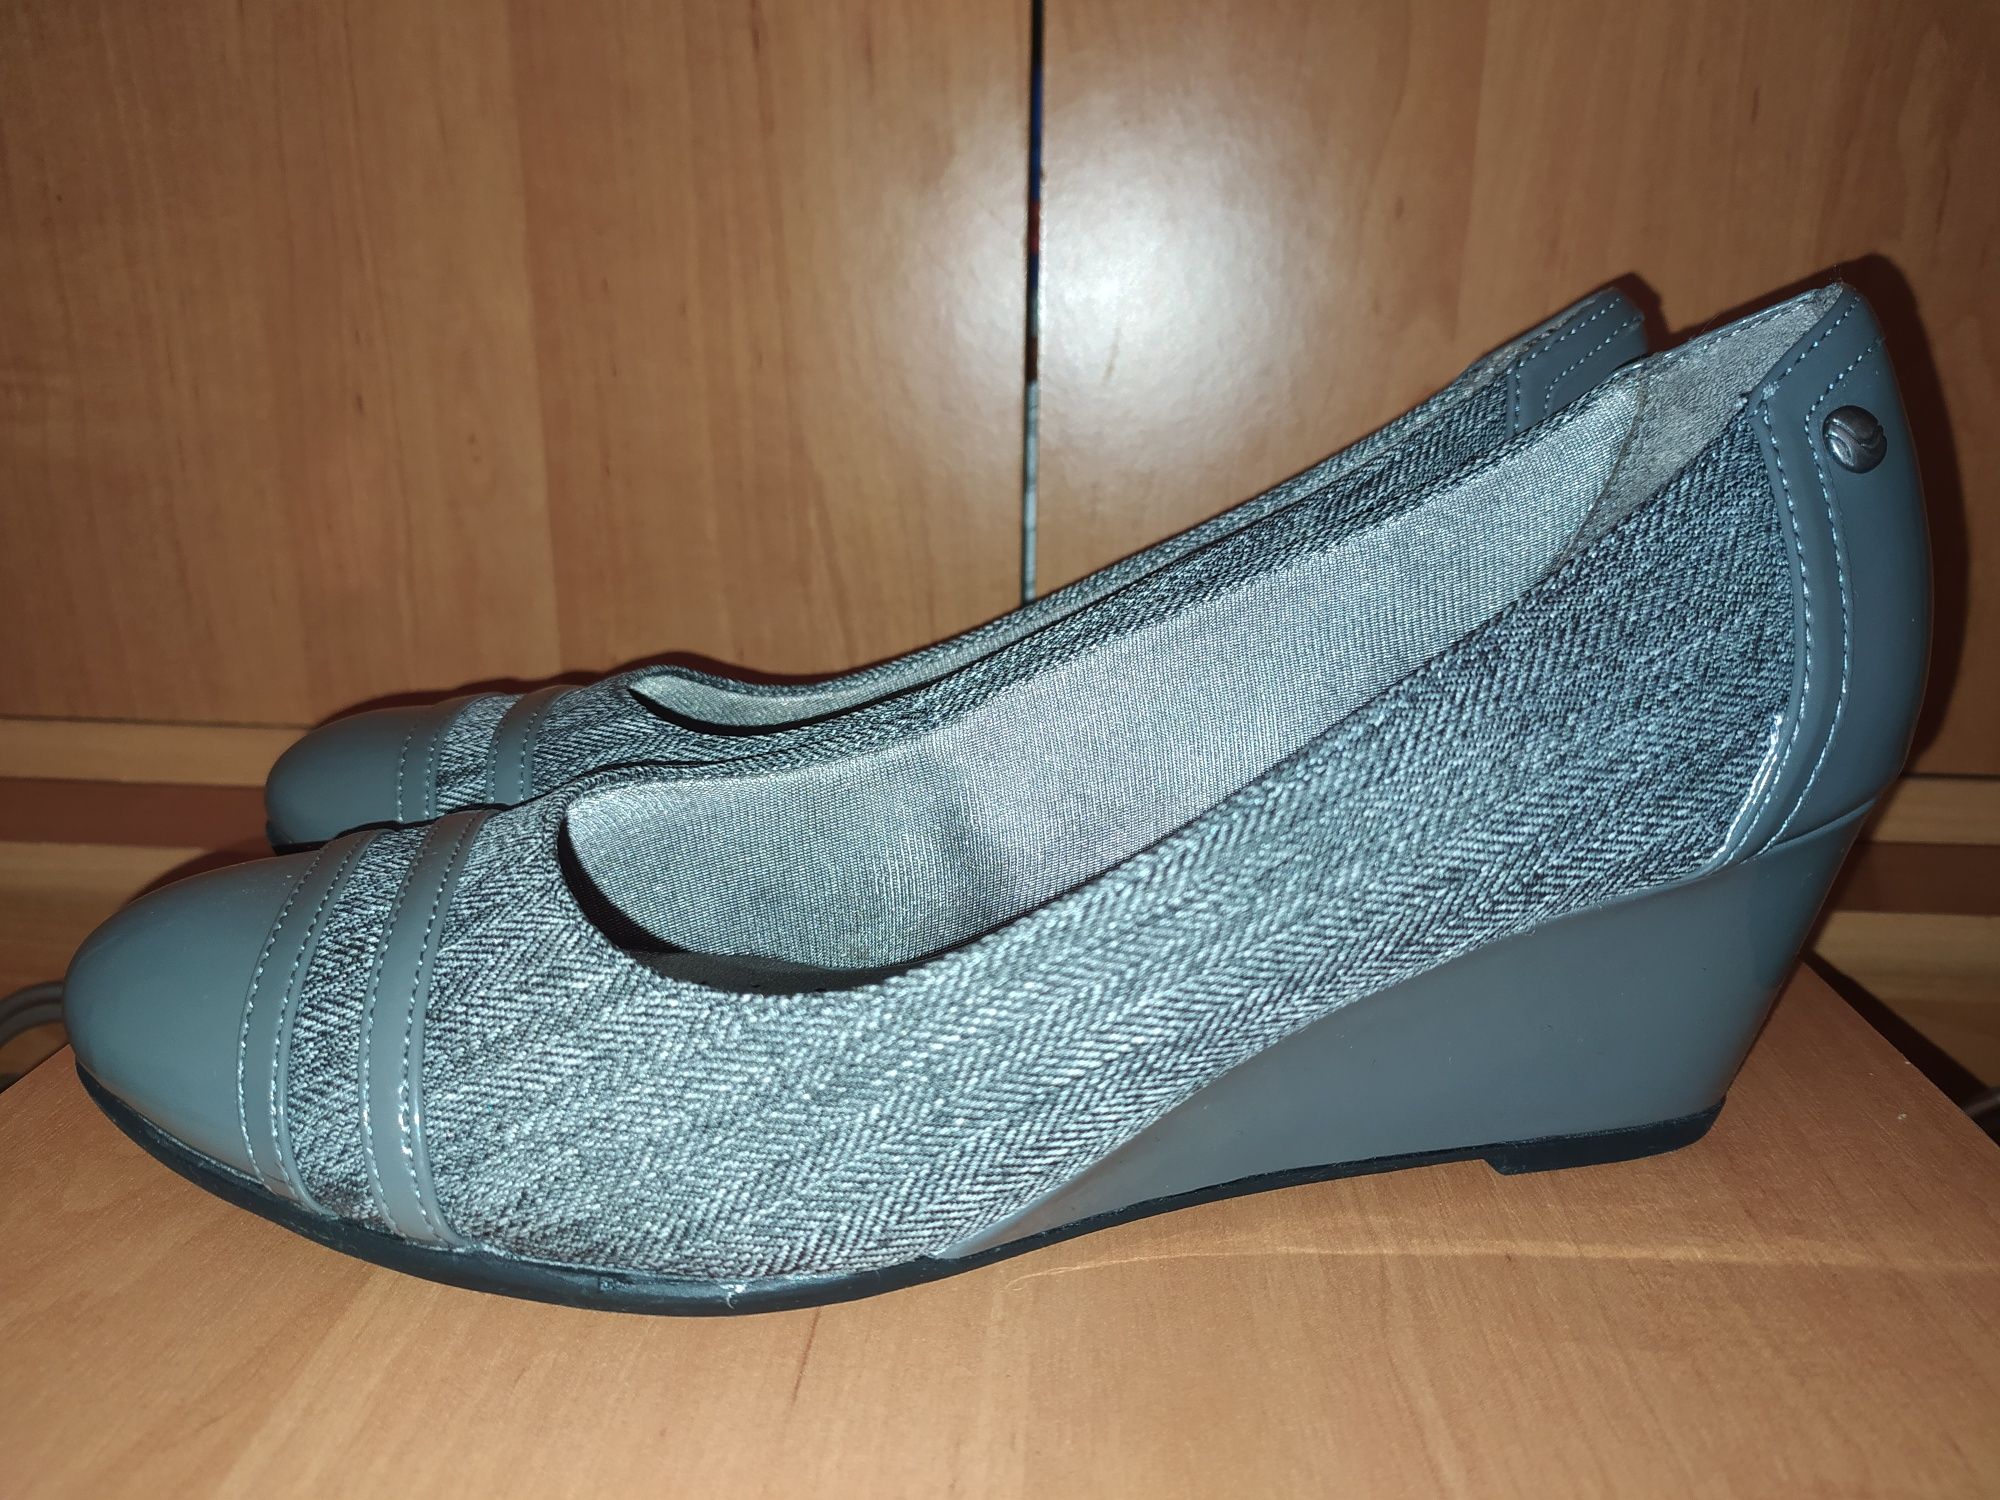 Продам женские туфли размер 38 стелька 24,5 см в идеальном состоянии.